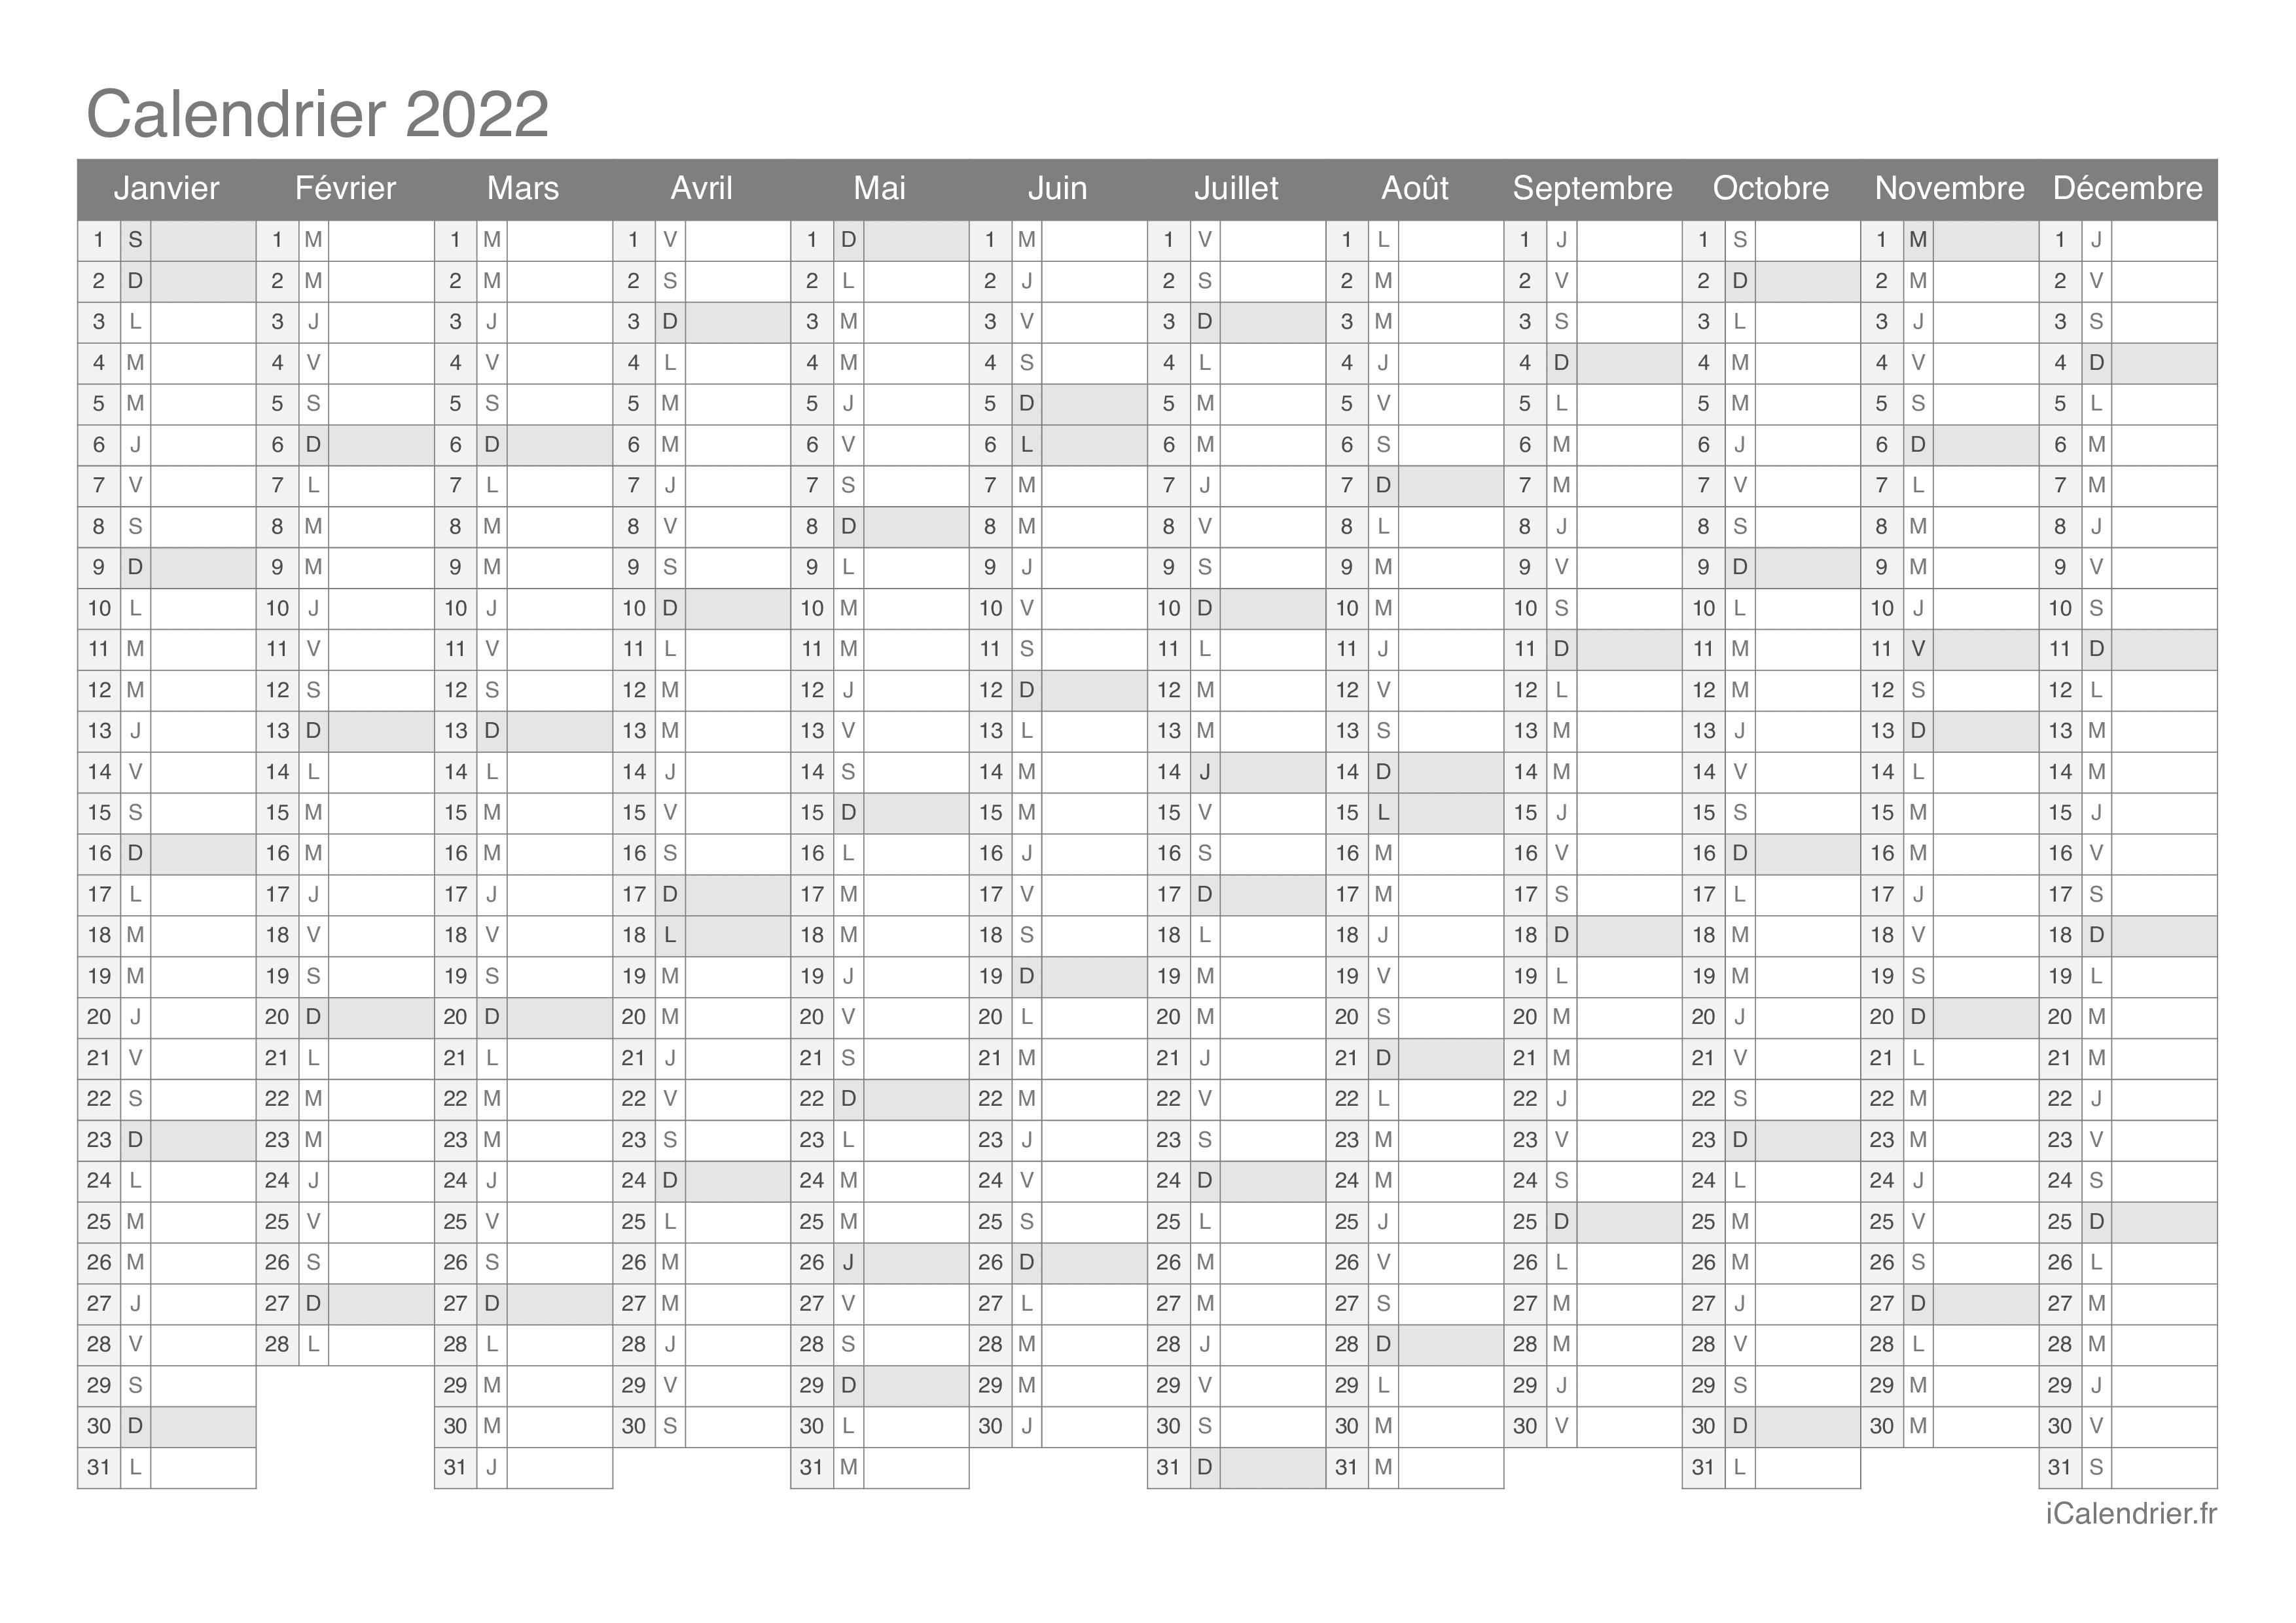 Calendrier à Colorier 2022 Calendrier 2022 à imprimer PDF et Excel   iCalendrier